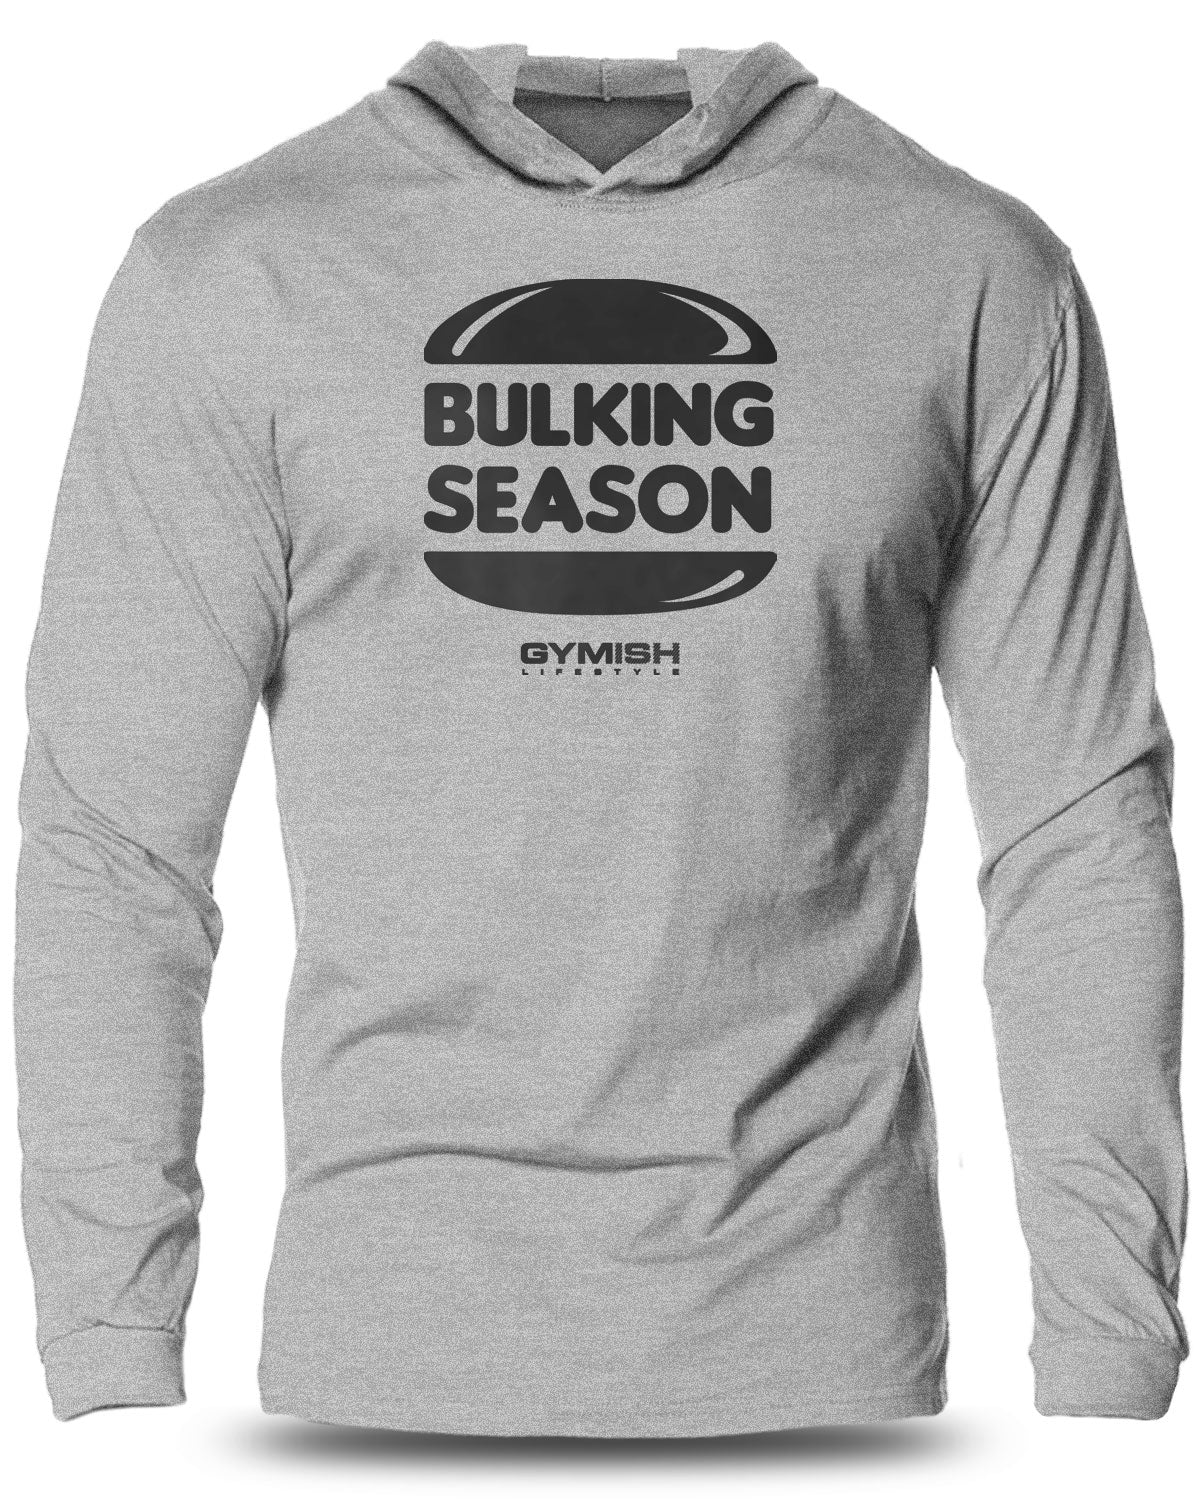 060-Bulking Season Lightweight Long Sleeve Hooded T-shirt for Men